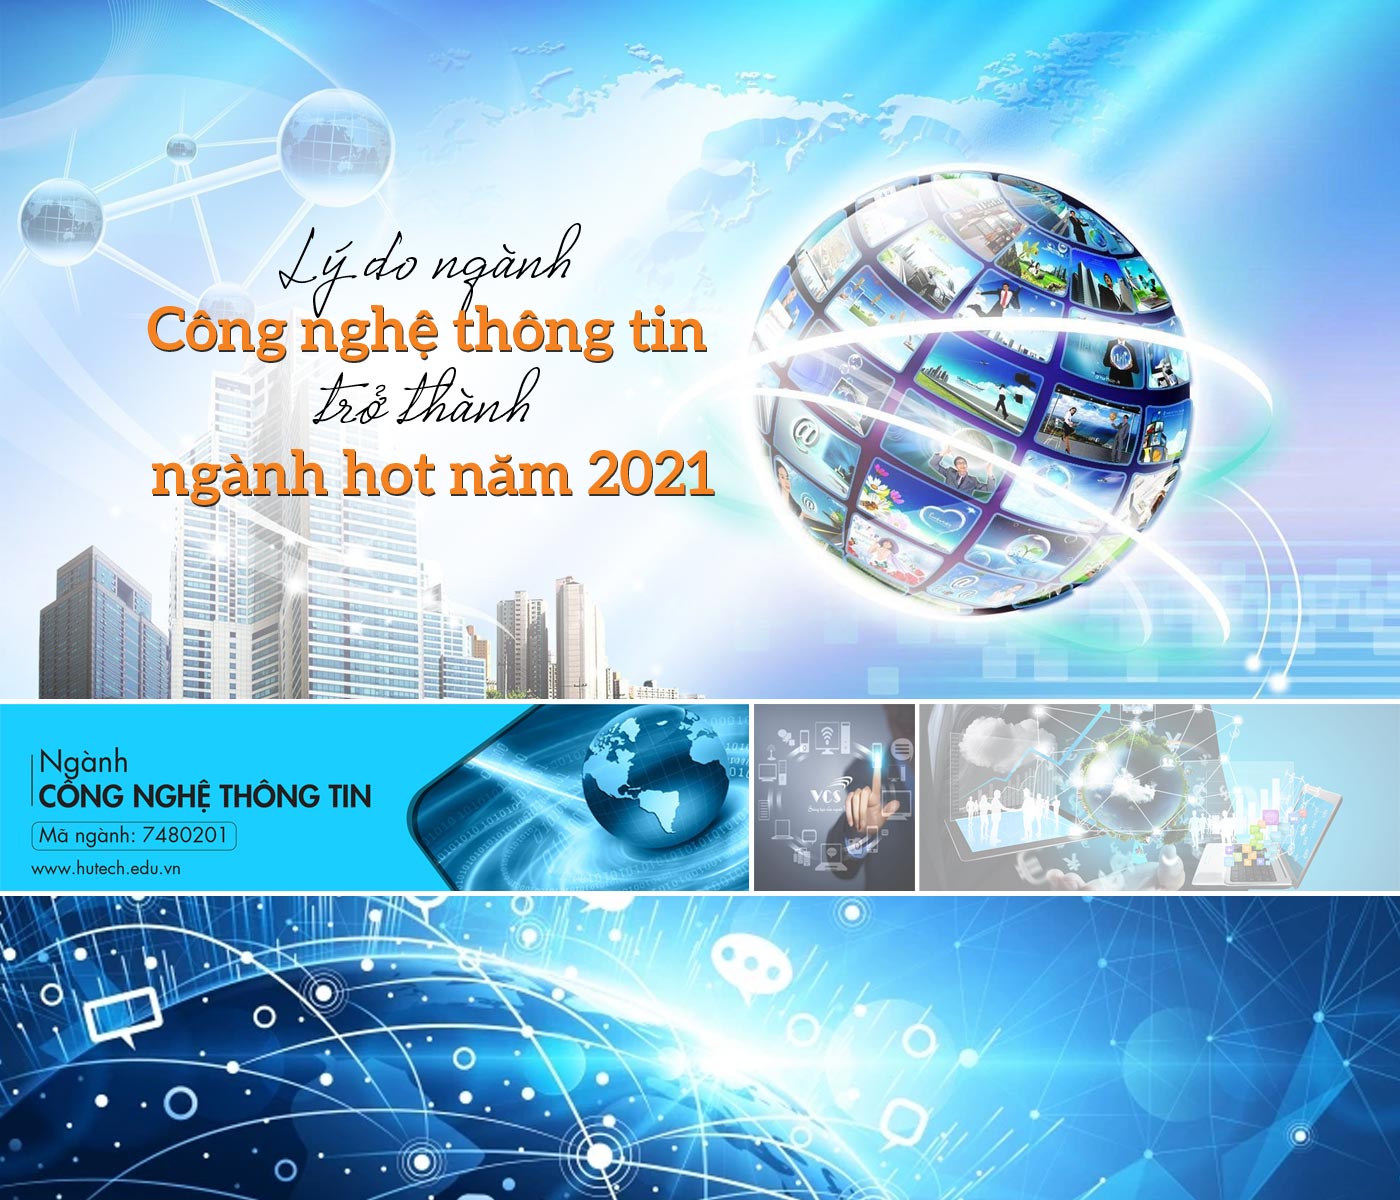 Lý do ngành Công nghệ thông tin trở thành ngành hot năm 2021 - Ảnh 1